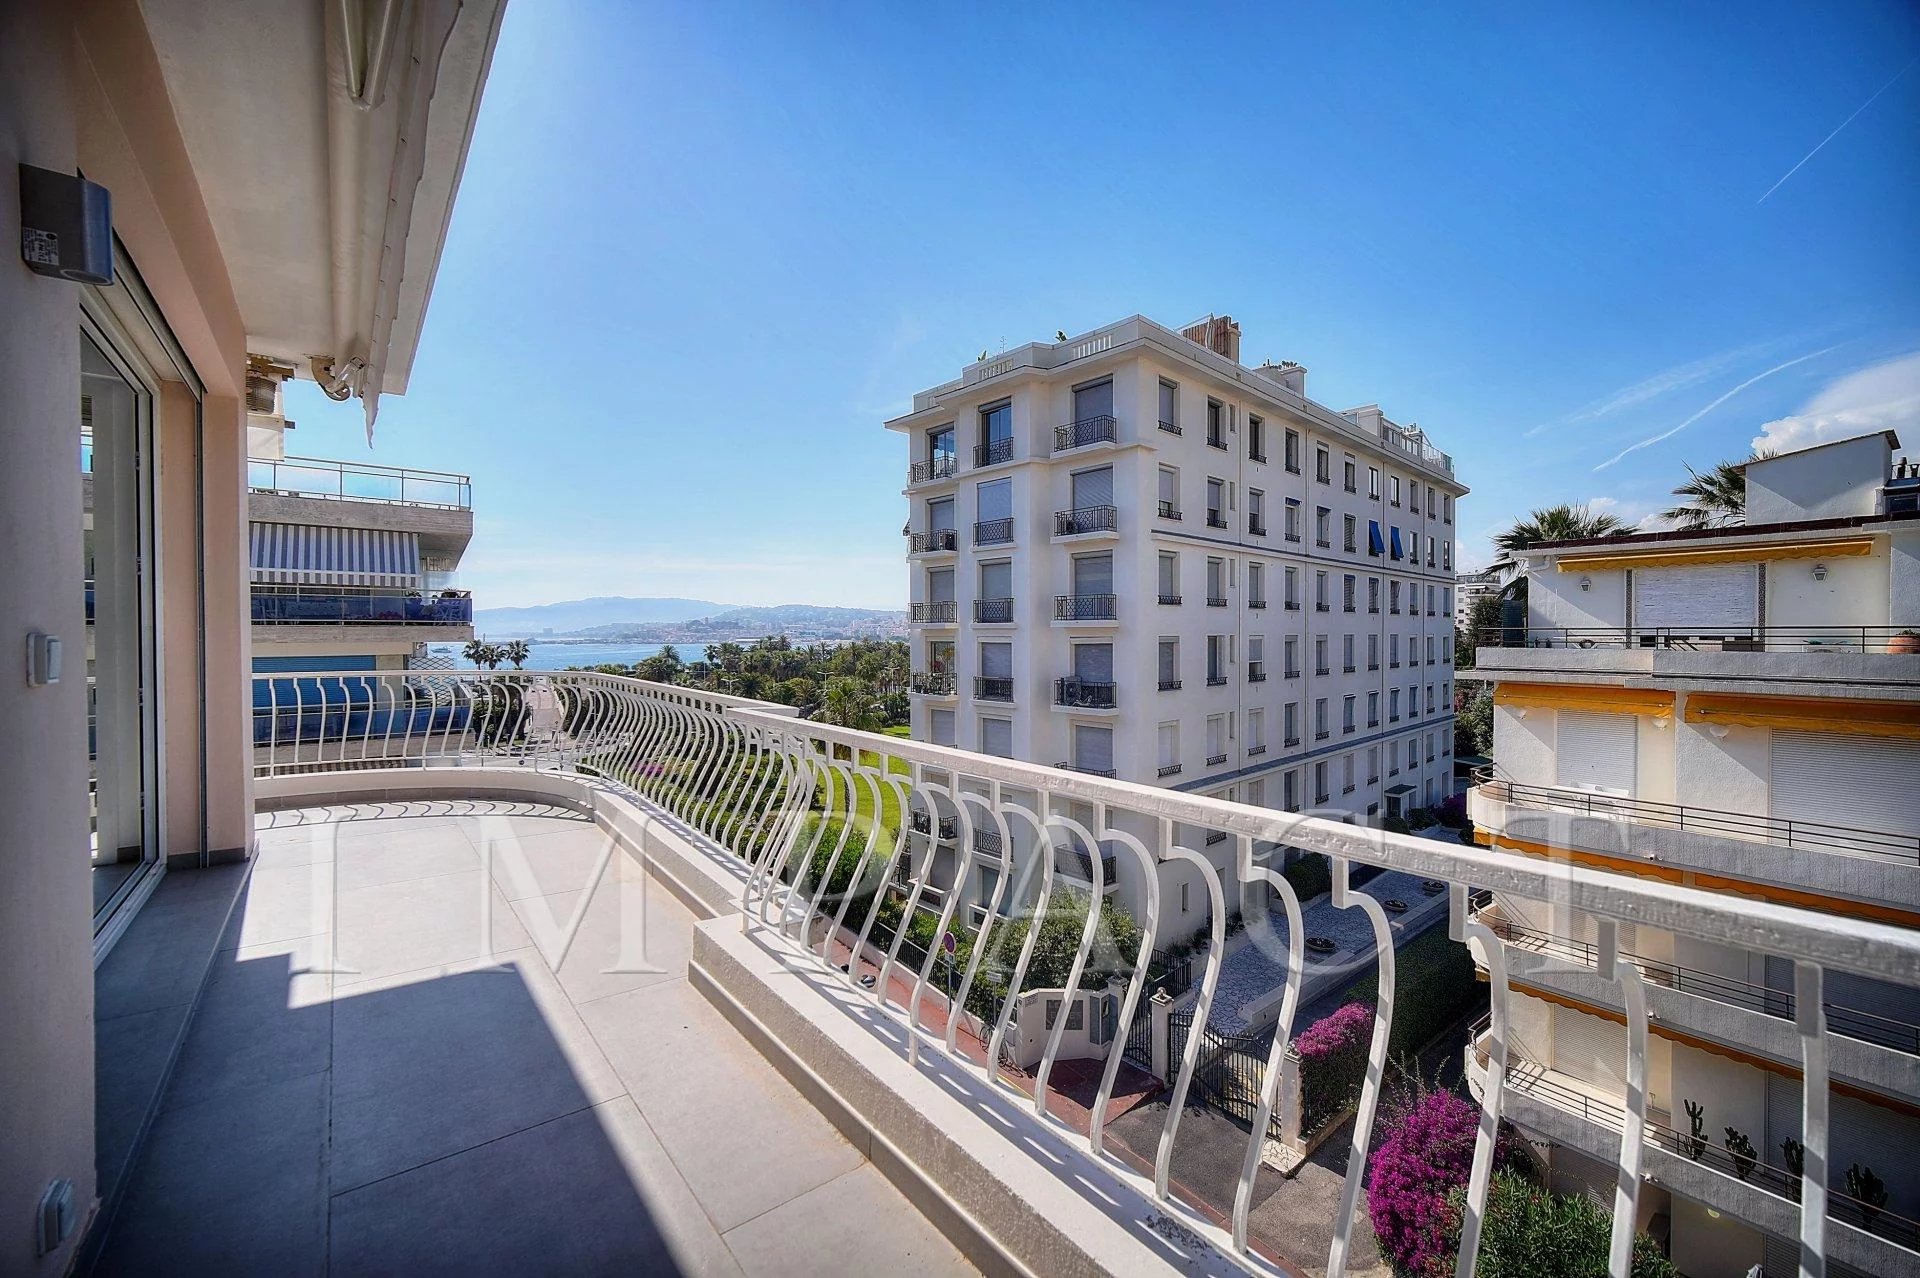 Location saisonnière - Cannes - Pointe Croisette - Appartement moderne vue mer